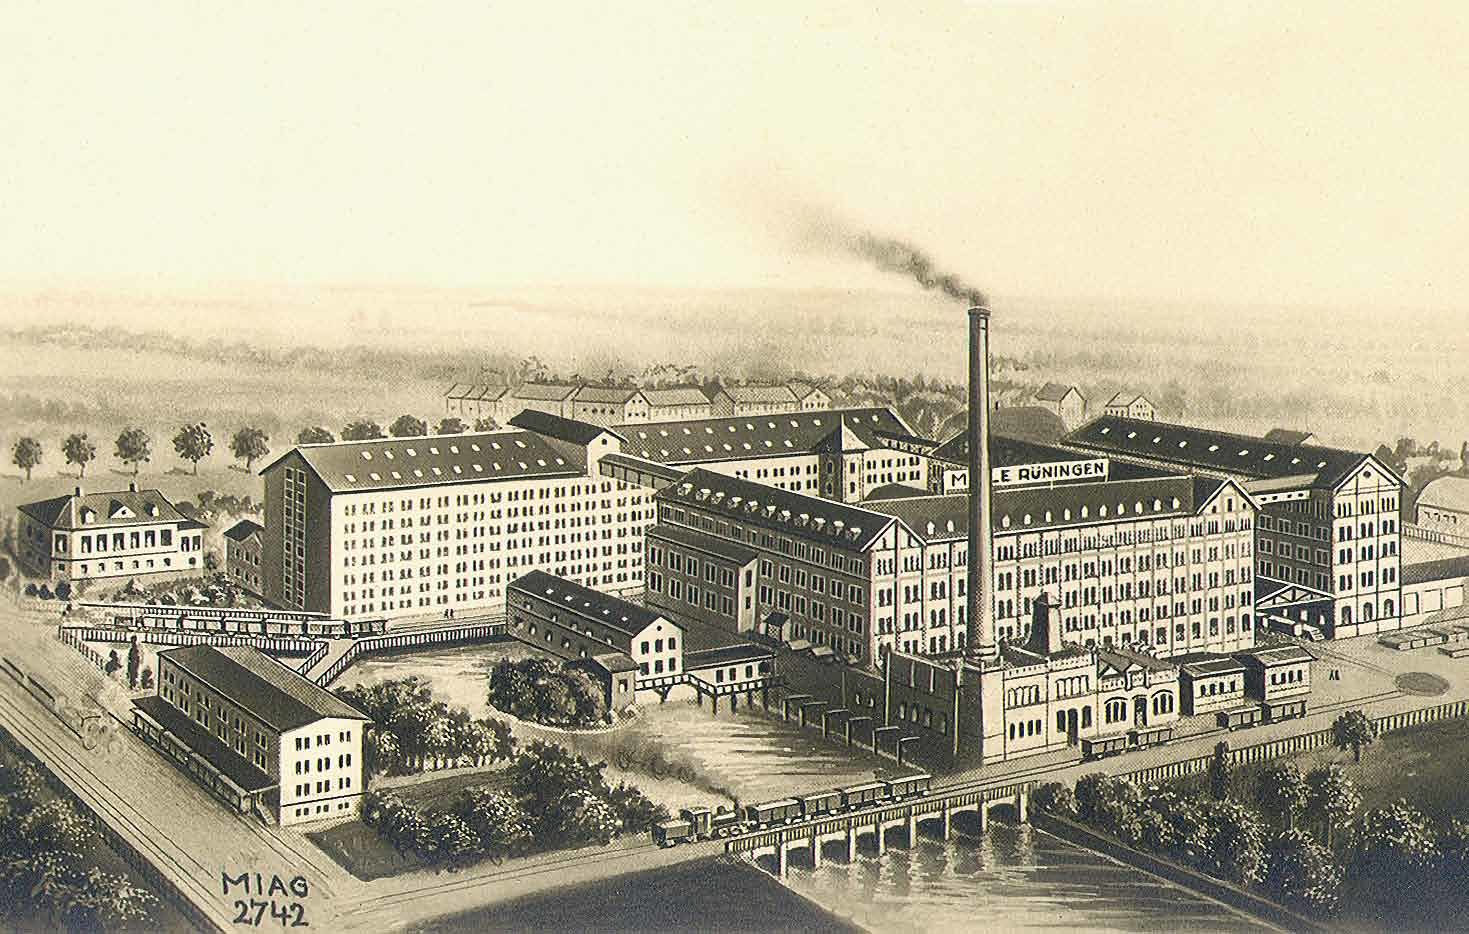 Die Mühle Rüningen gab es bereits im Mittelalter. 1893 wird sie zur ersten industriellen Großmühle.